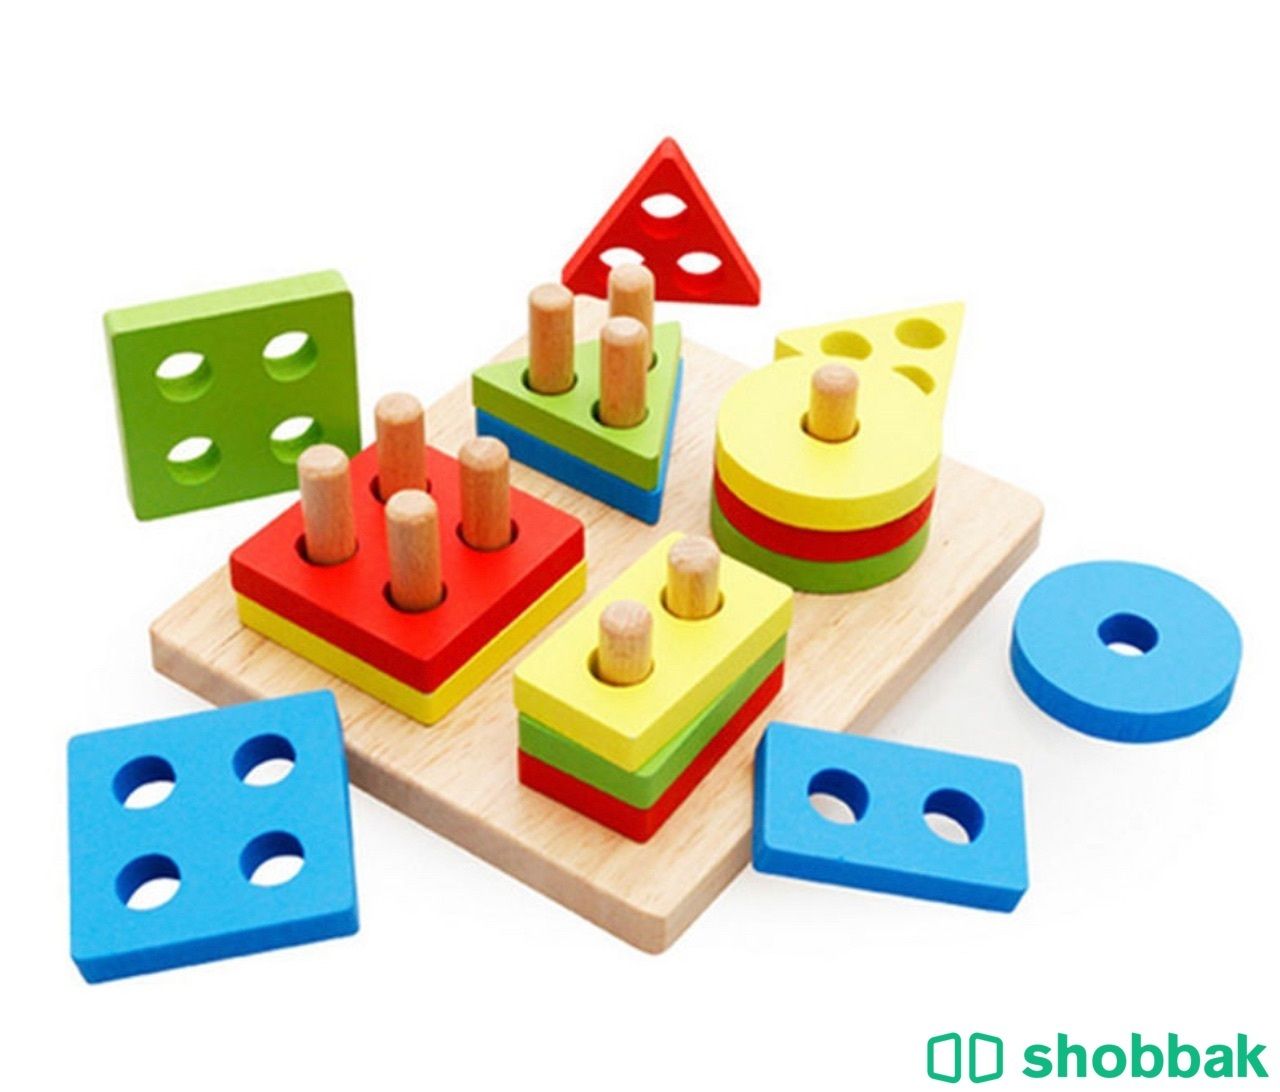 17 قطعة ألعاب مطابقة الشكل الهندسي سم مكعبات قابلة للفصل والإزالة للأطفال حتى سن Shobbak Saudi Arabia